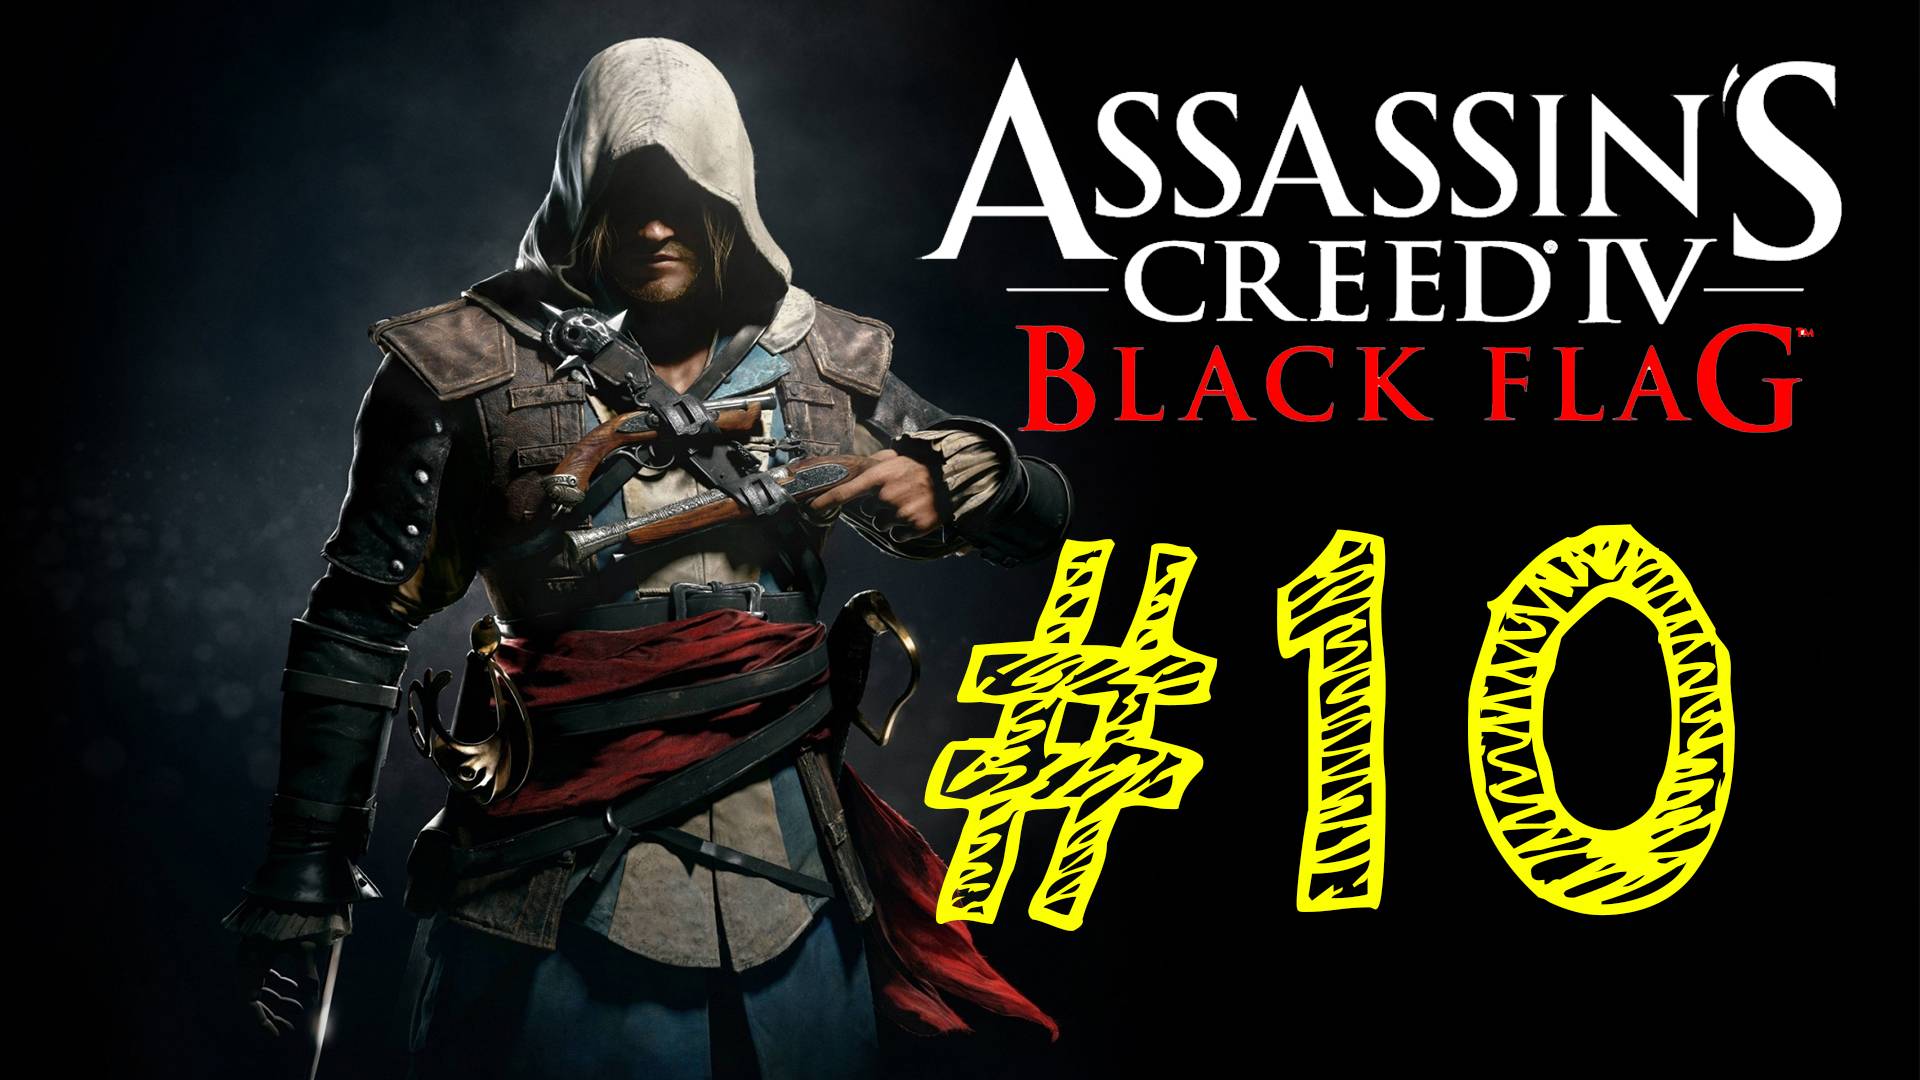 Assassins Creed IV Black Flag. Ассасин черный флаг. 10 выпуск. ВЕК ПИРАТСТВА. Прохождение компании